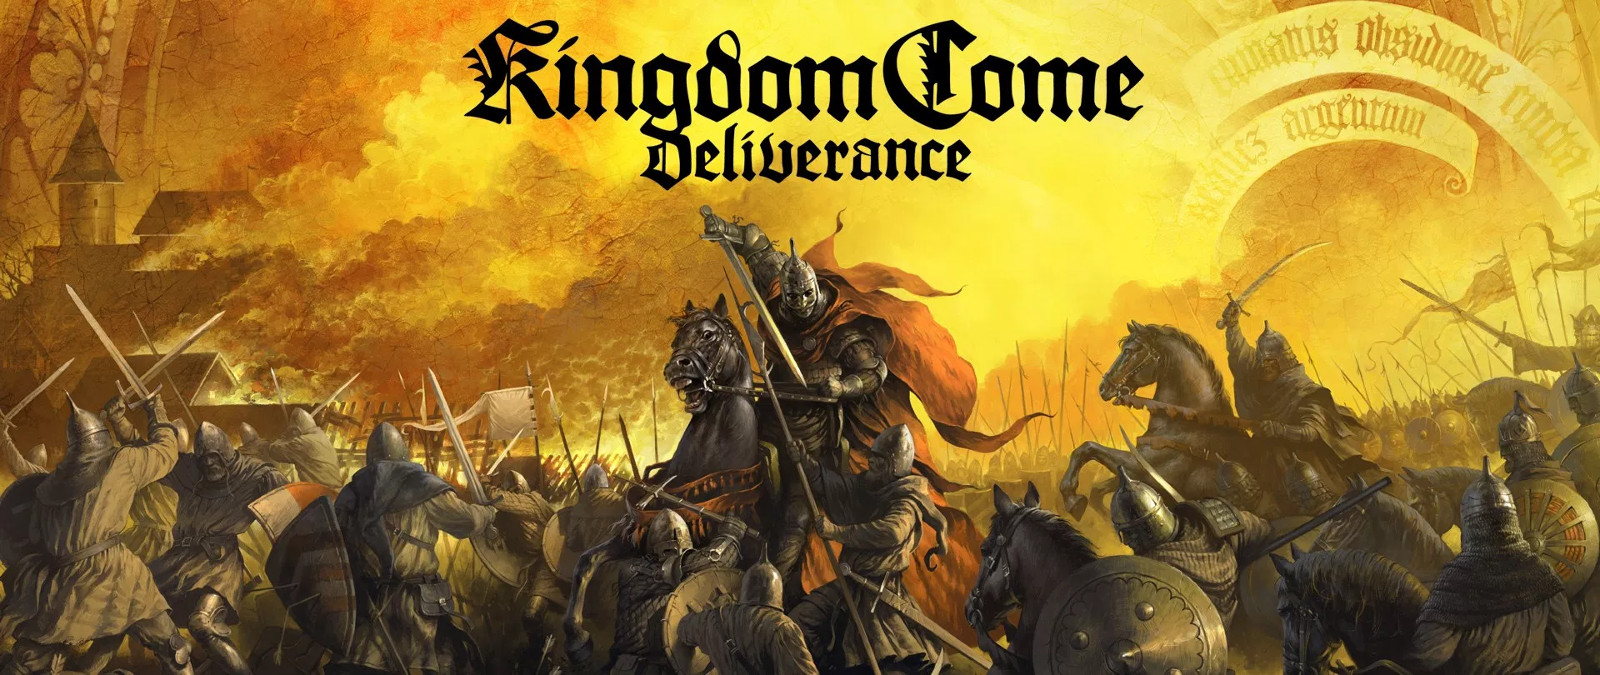 Kingdom Come: Deliverance — проблемы с запуском, баги, вылеты